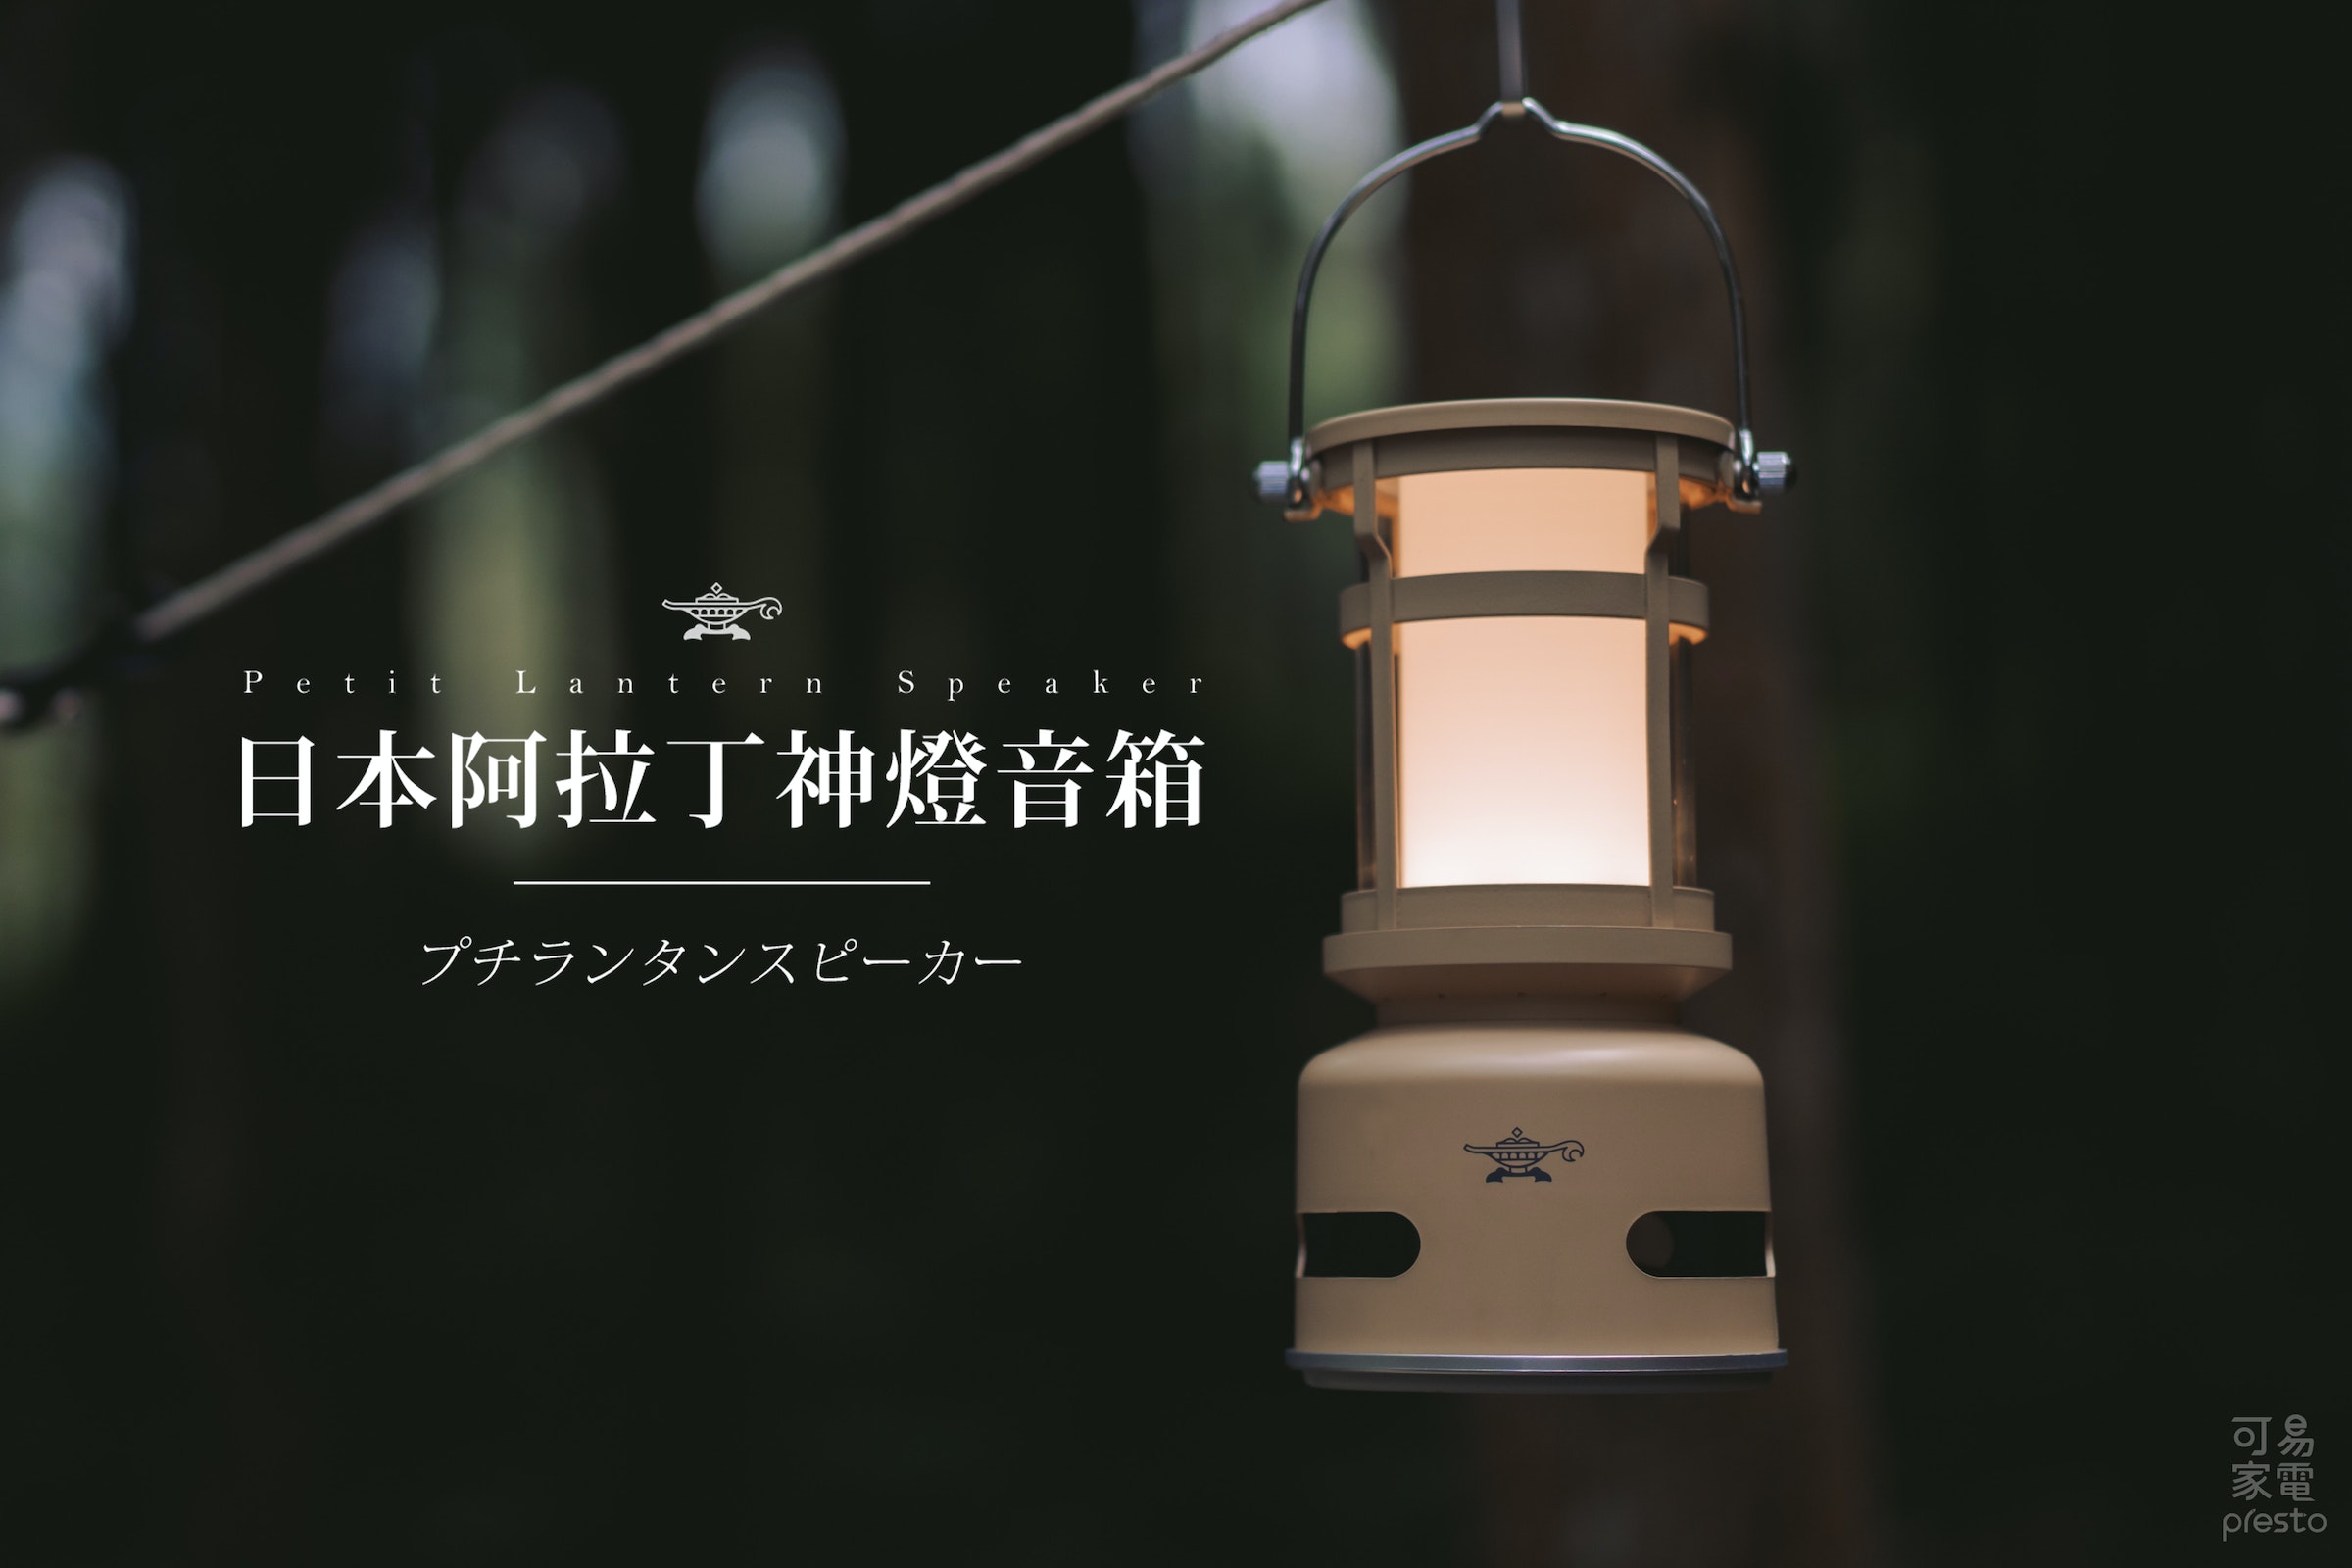 照片中提到了Petit Lantern、Lantern Speaker、日本阿拉丁神燈音箱，包含了燈具、燈具、光、產品設計、設計